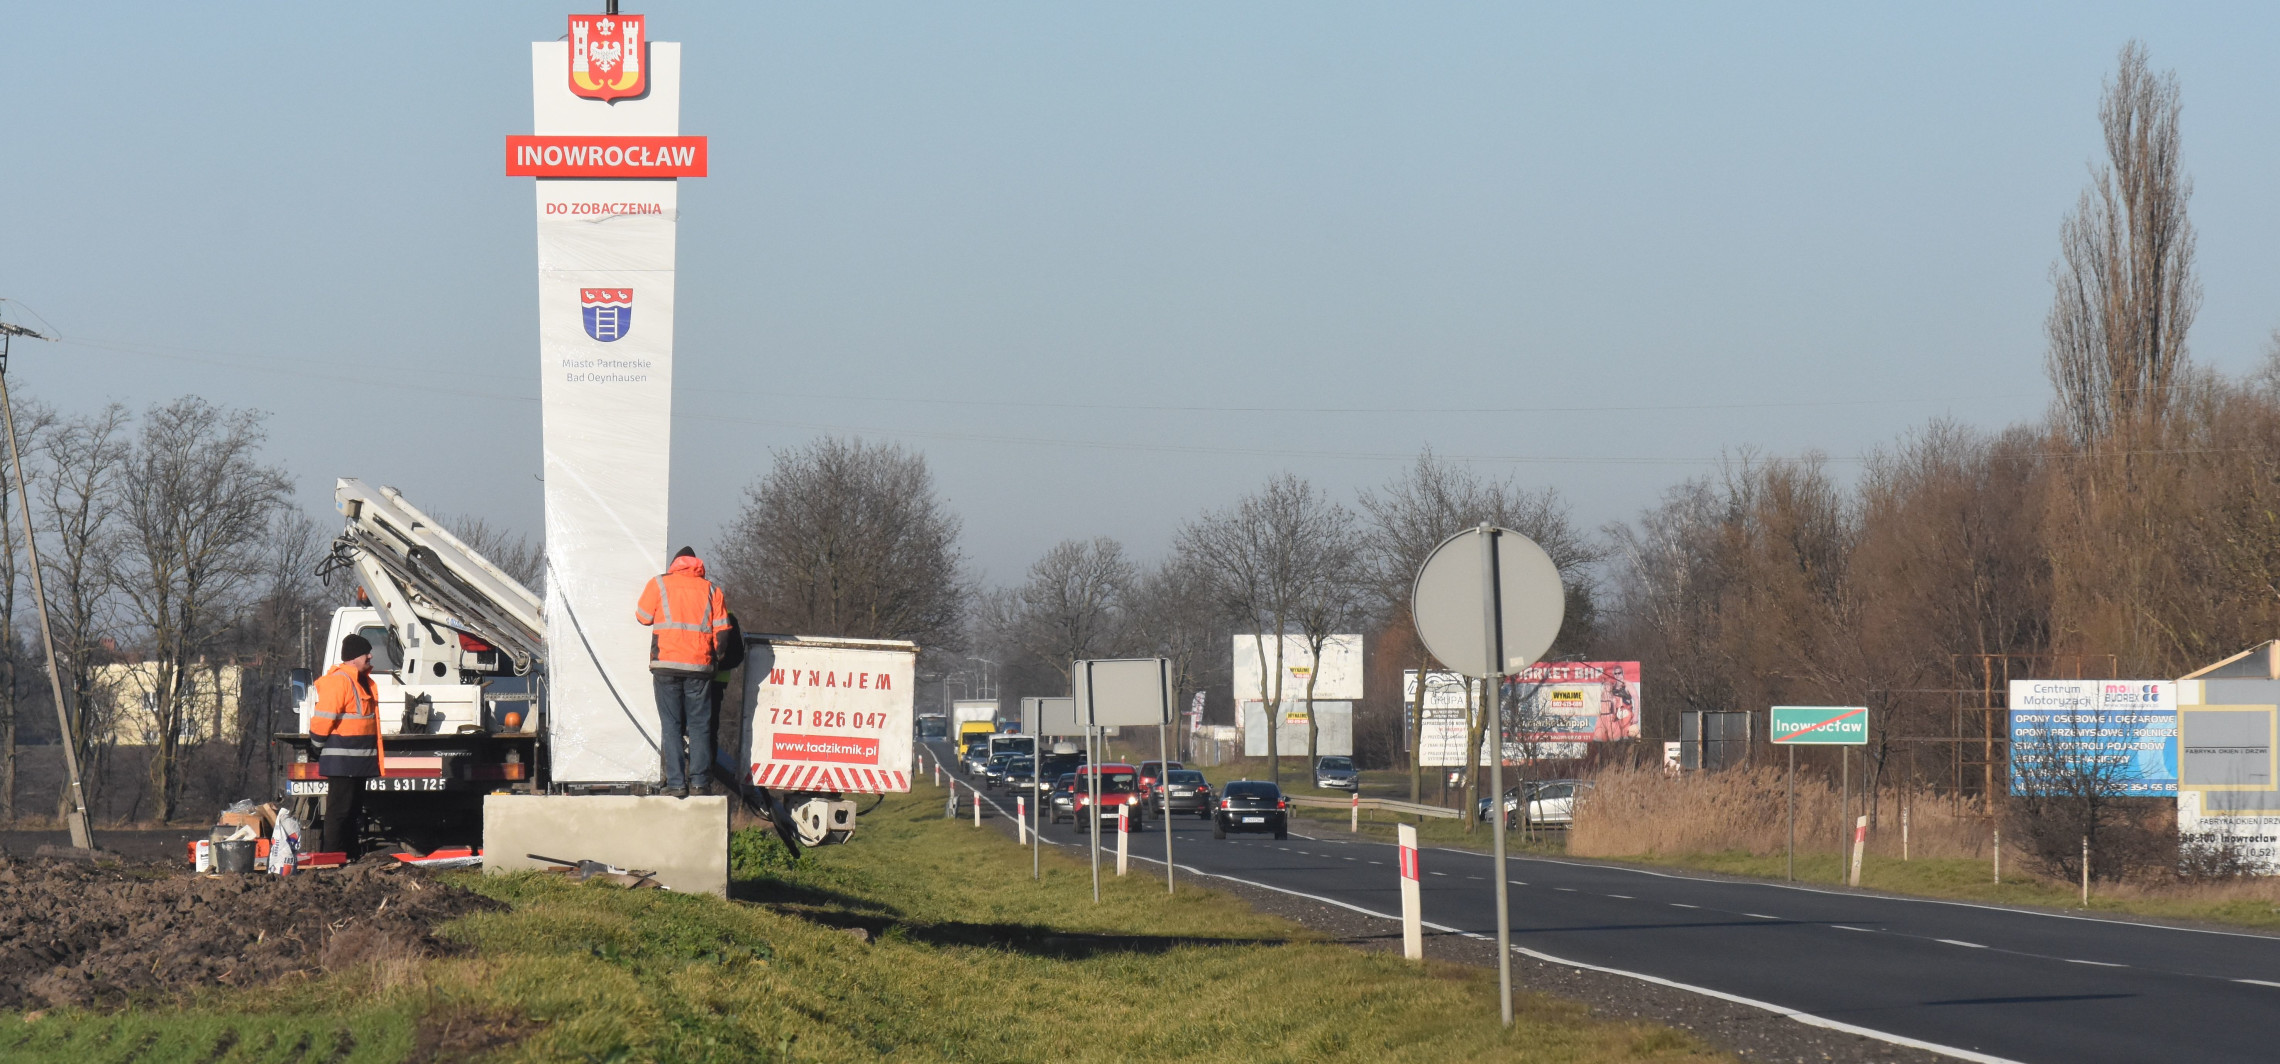 Inowrocław - Przy wjeździe do miasta montują pylon